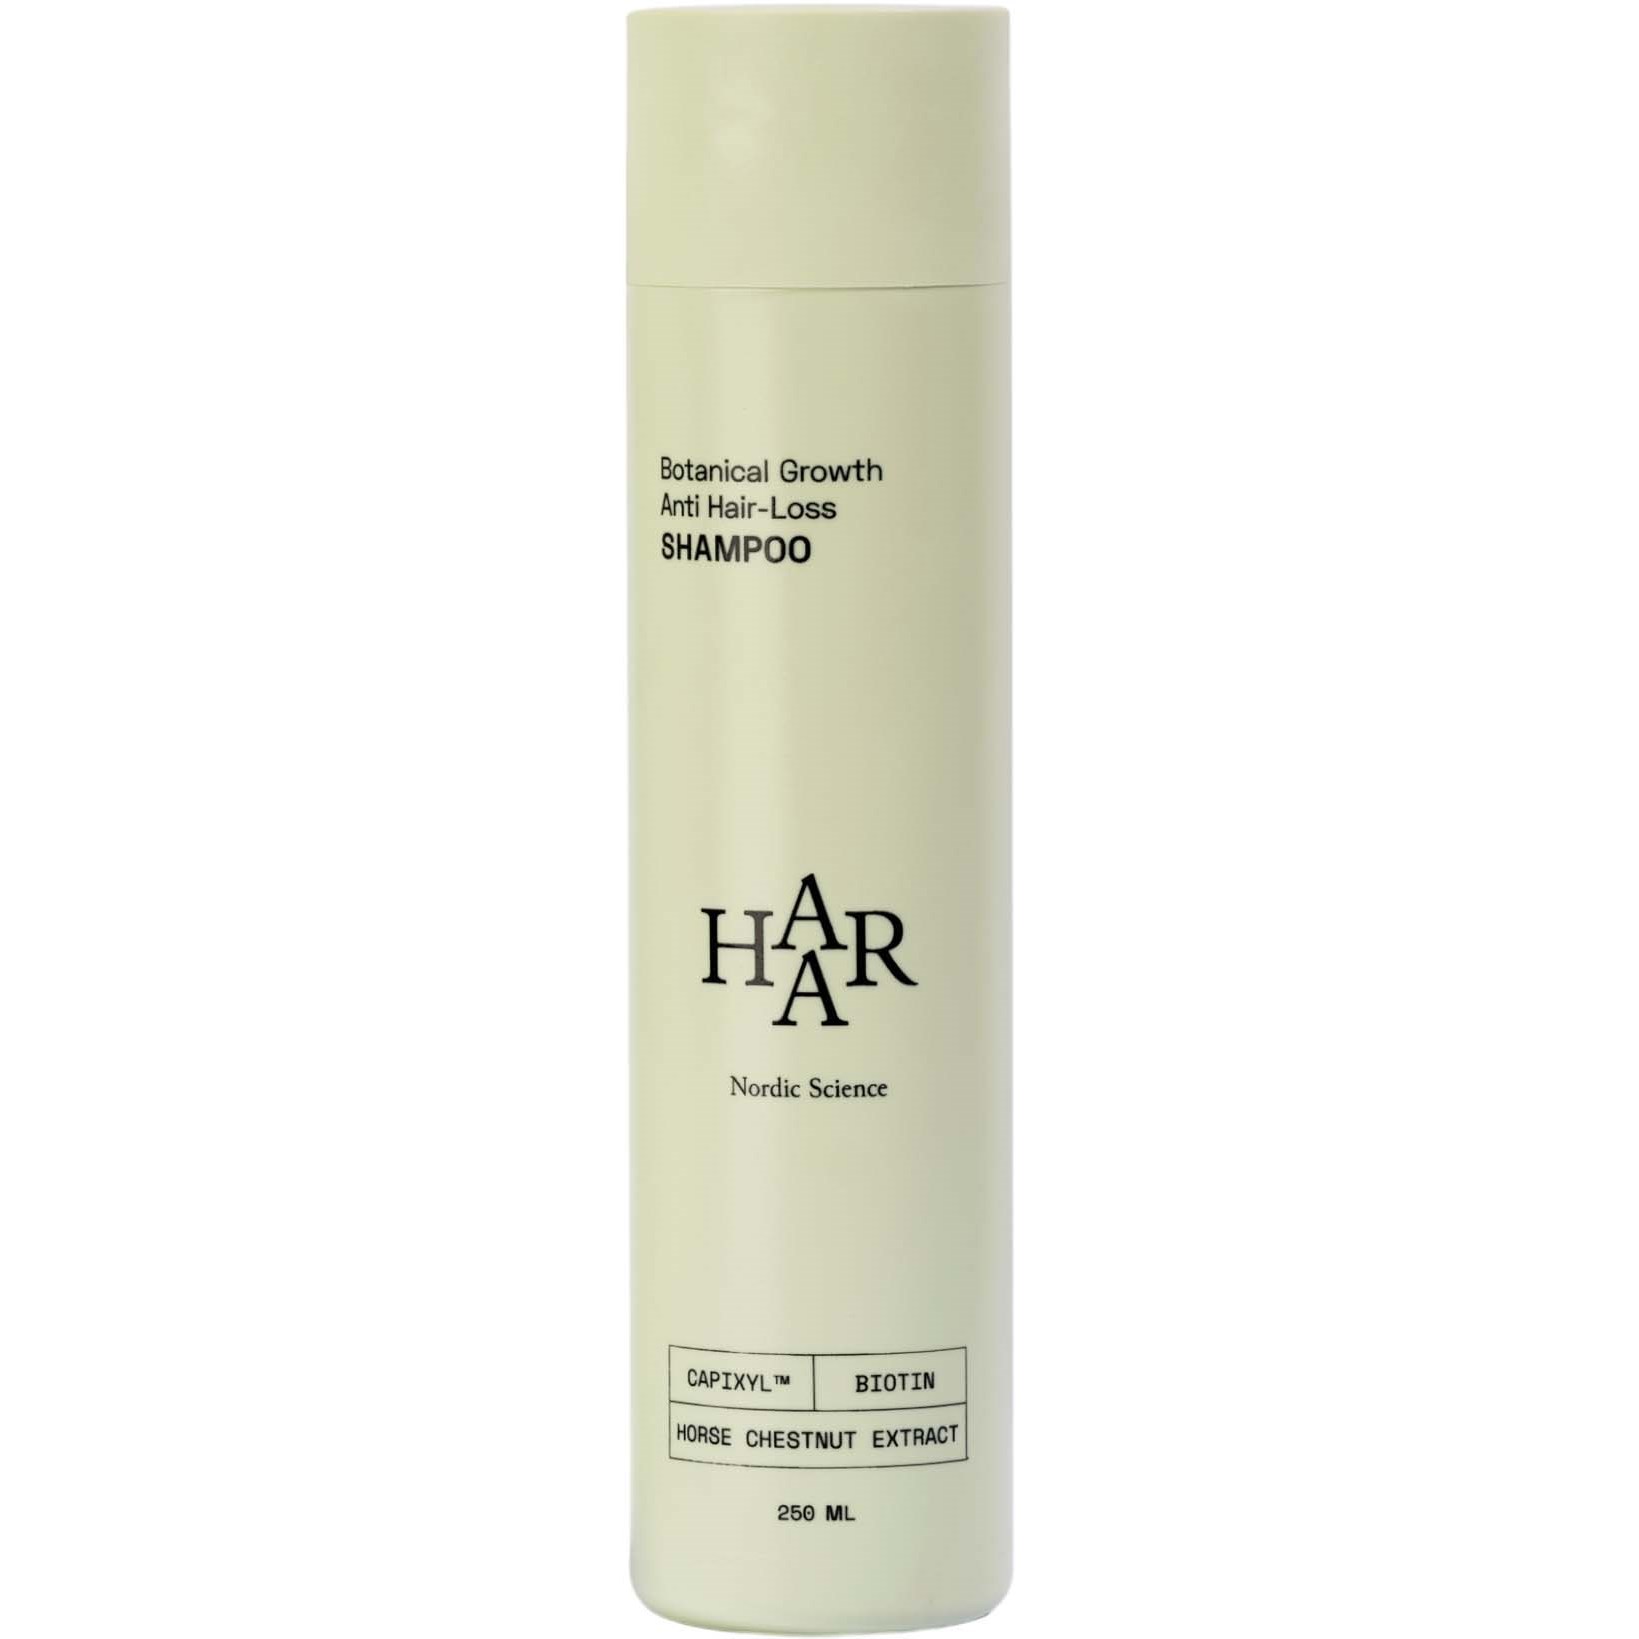 HAAR Botanical Growth Anti Hair-Loss Shampoo 250 ml